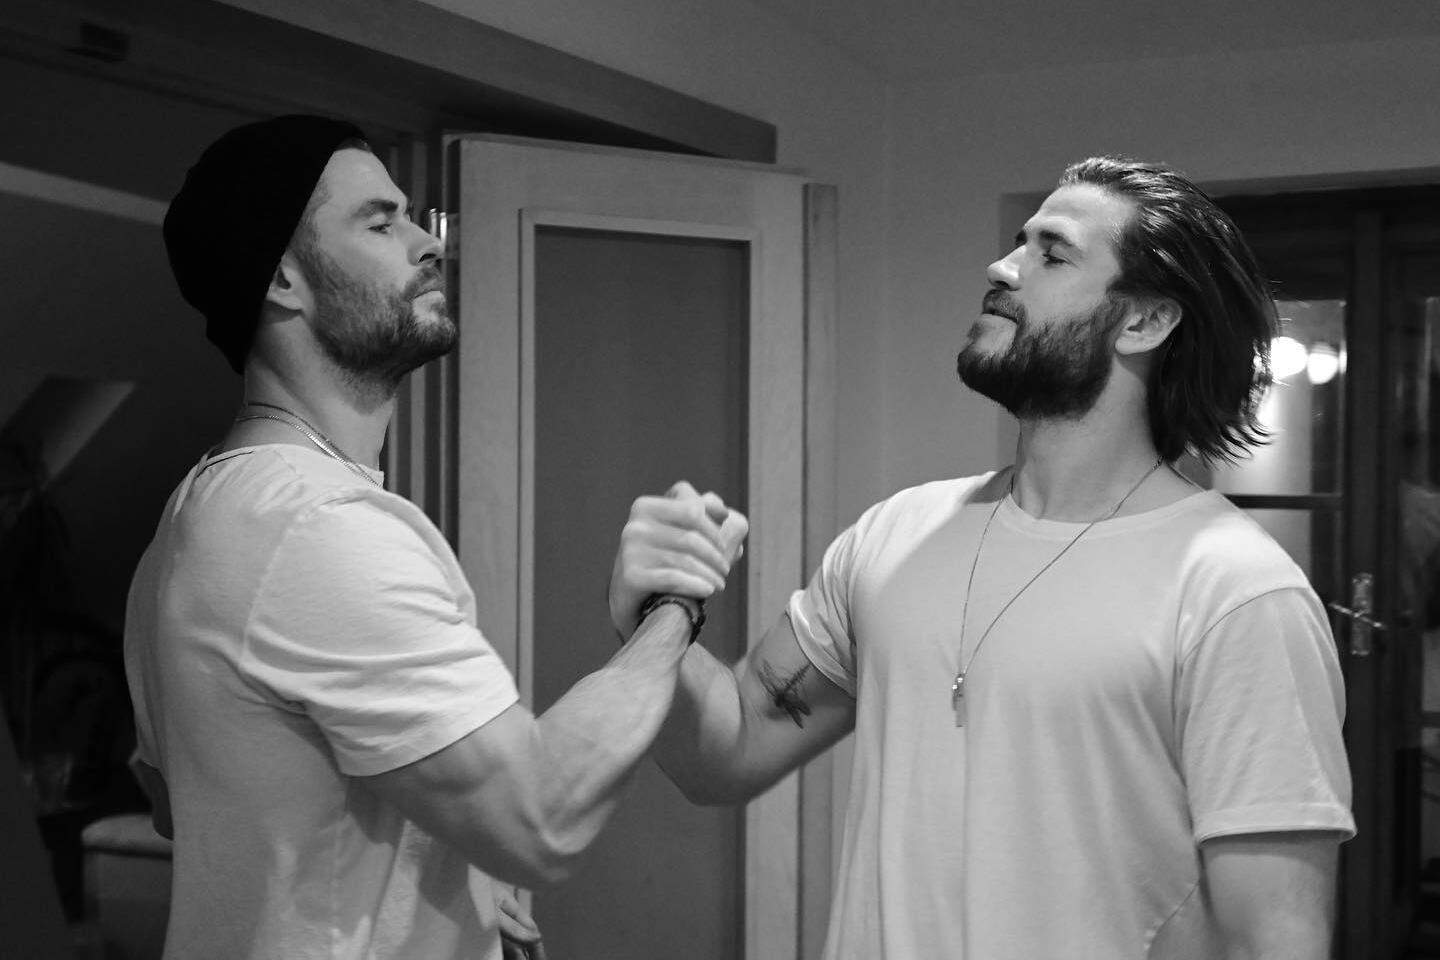 Chris Hemsworth quase perdeu o papel de Thor para seu irmão: Minha audição  foi péssima - JASB - Jornal dos Agentes de Saúde do Brasil.